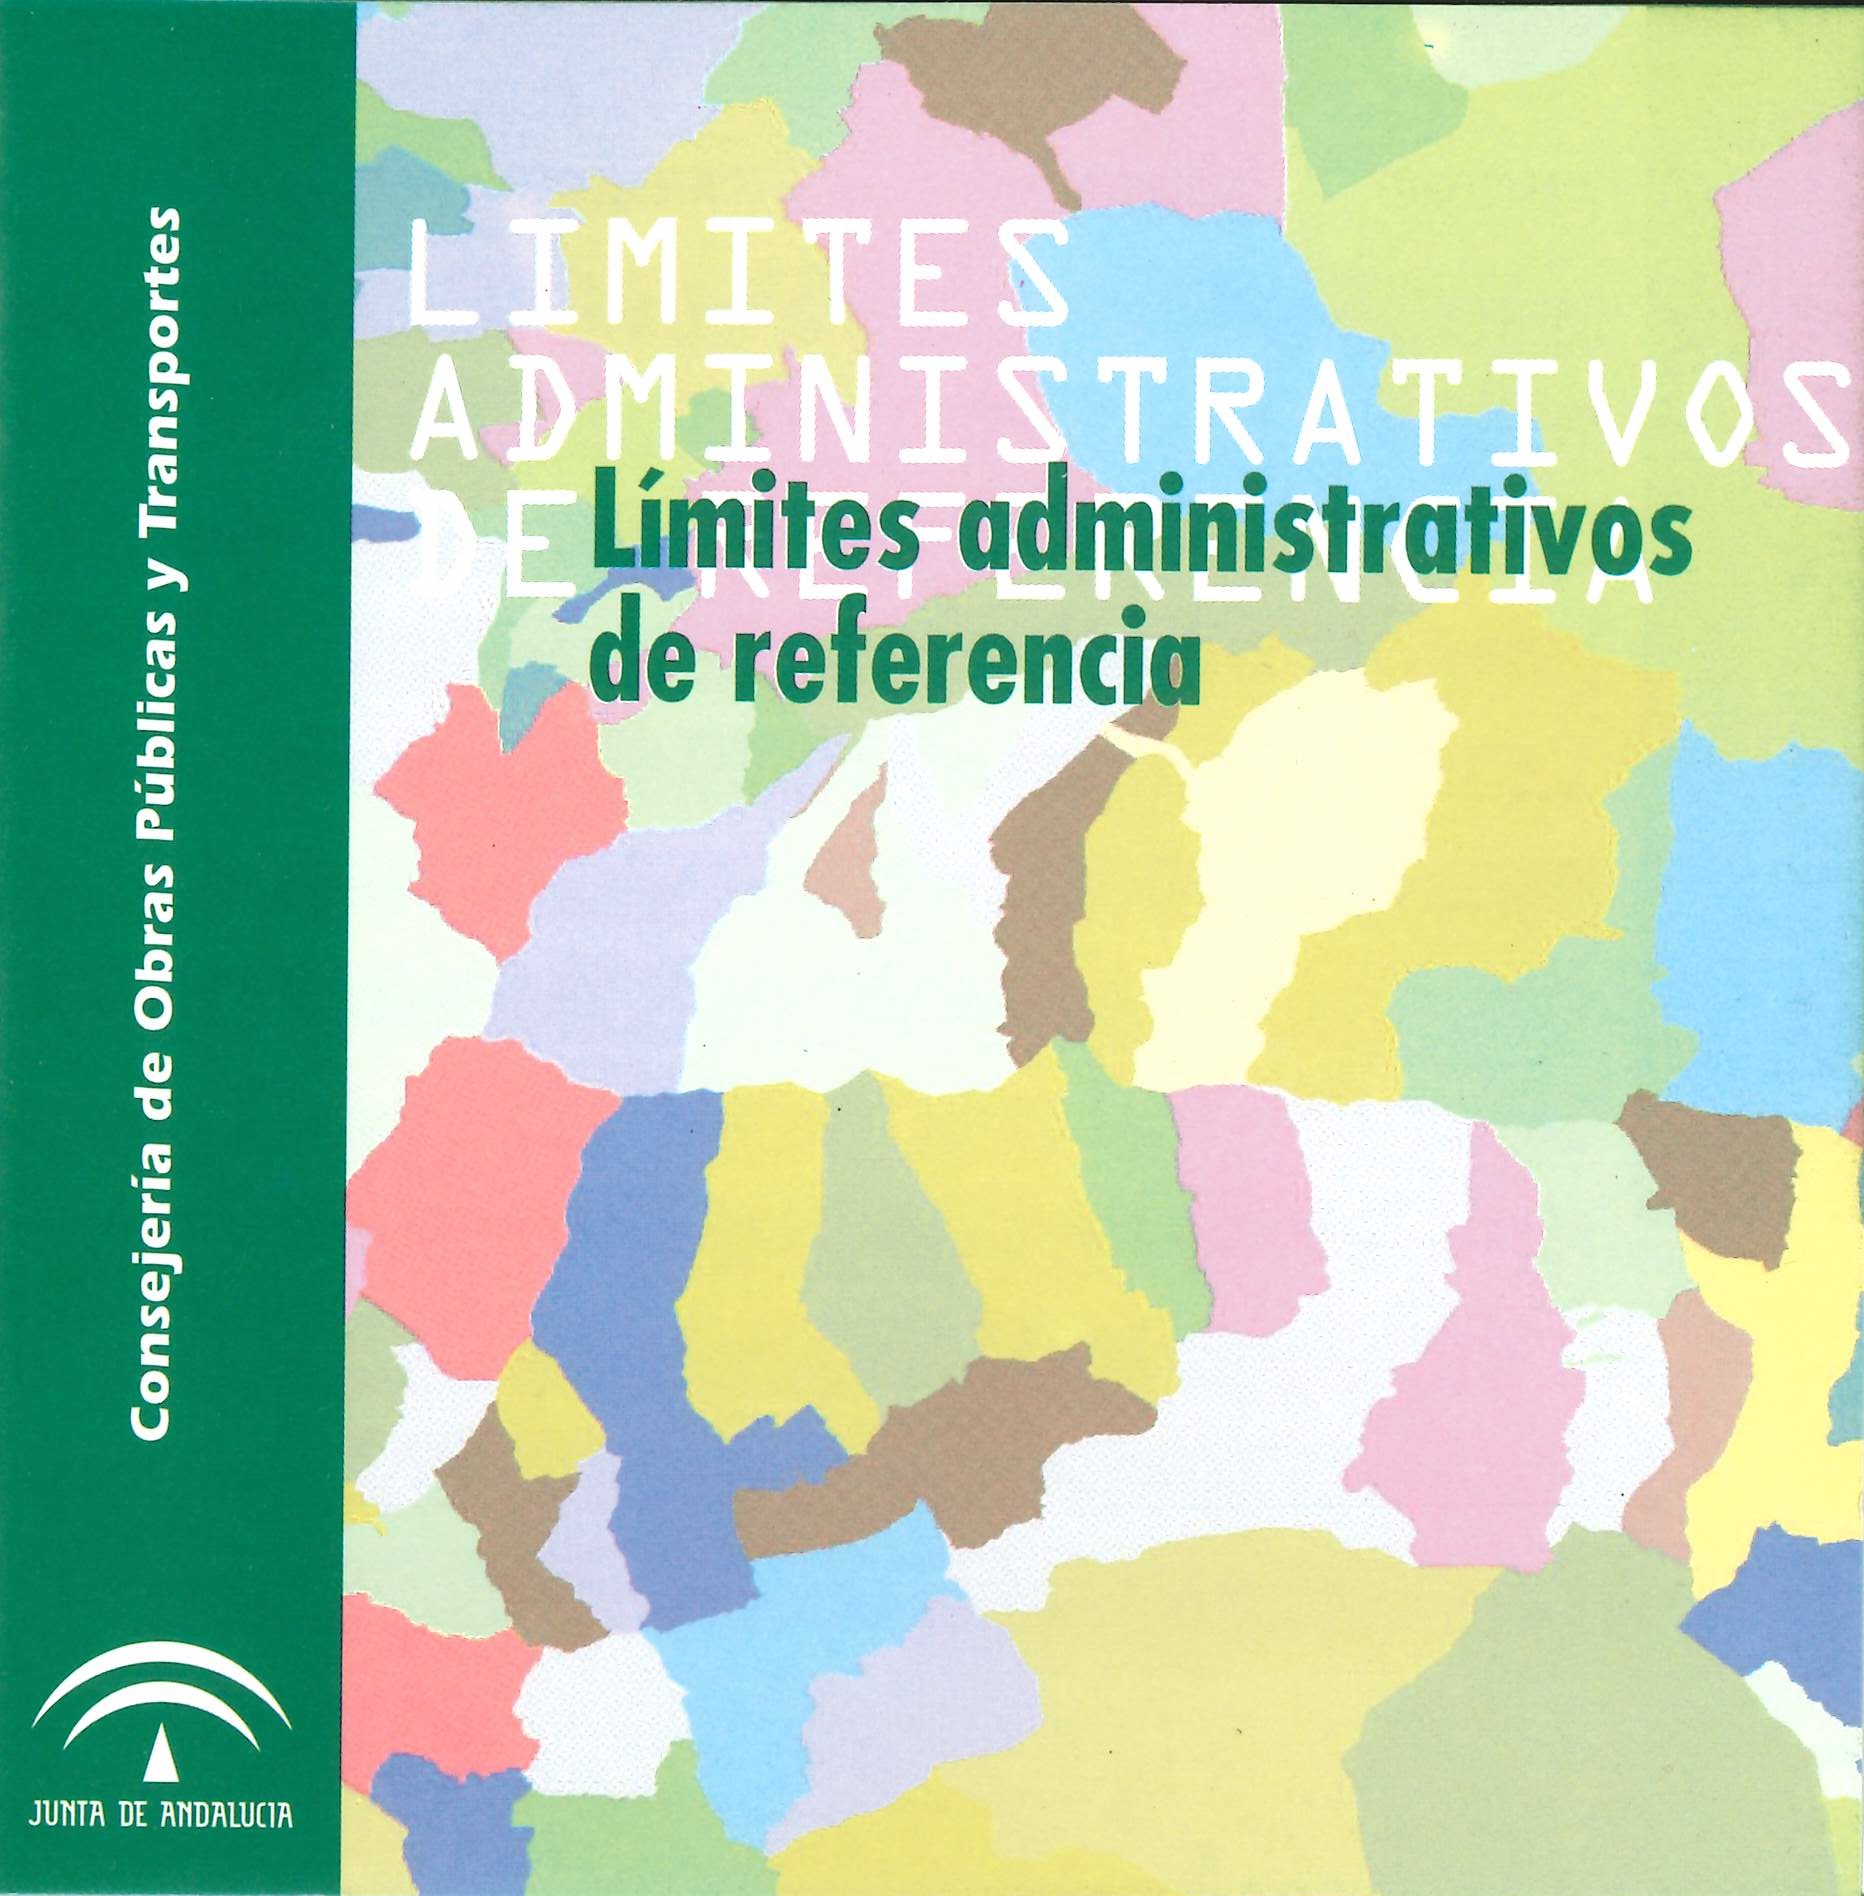 Imagen representativa de la publicación Límites administrativos de referencia